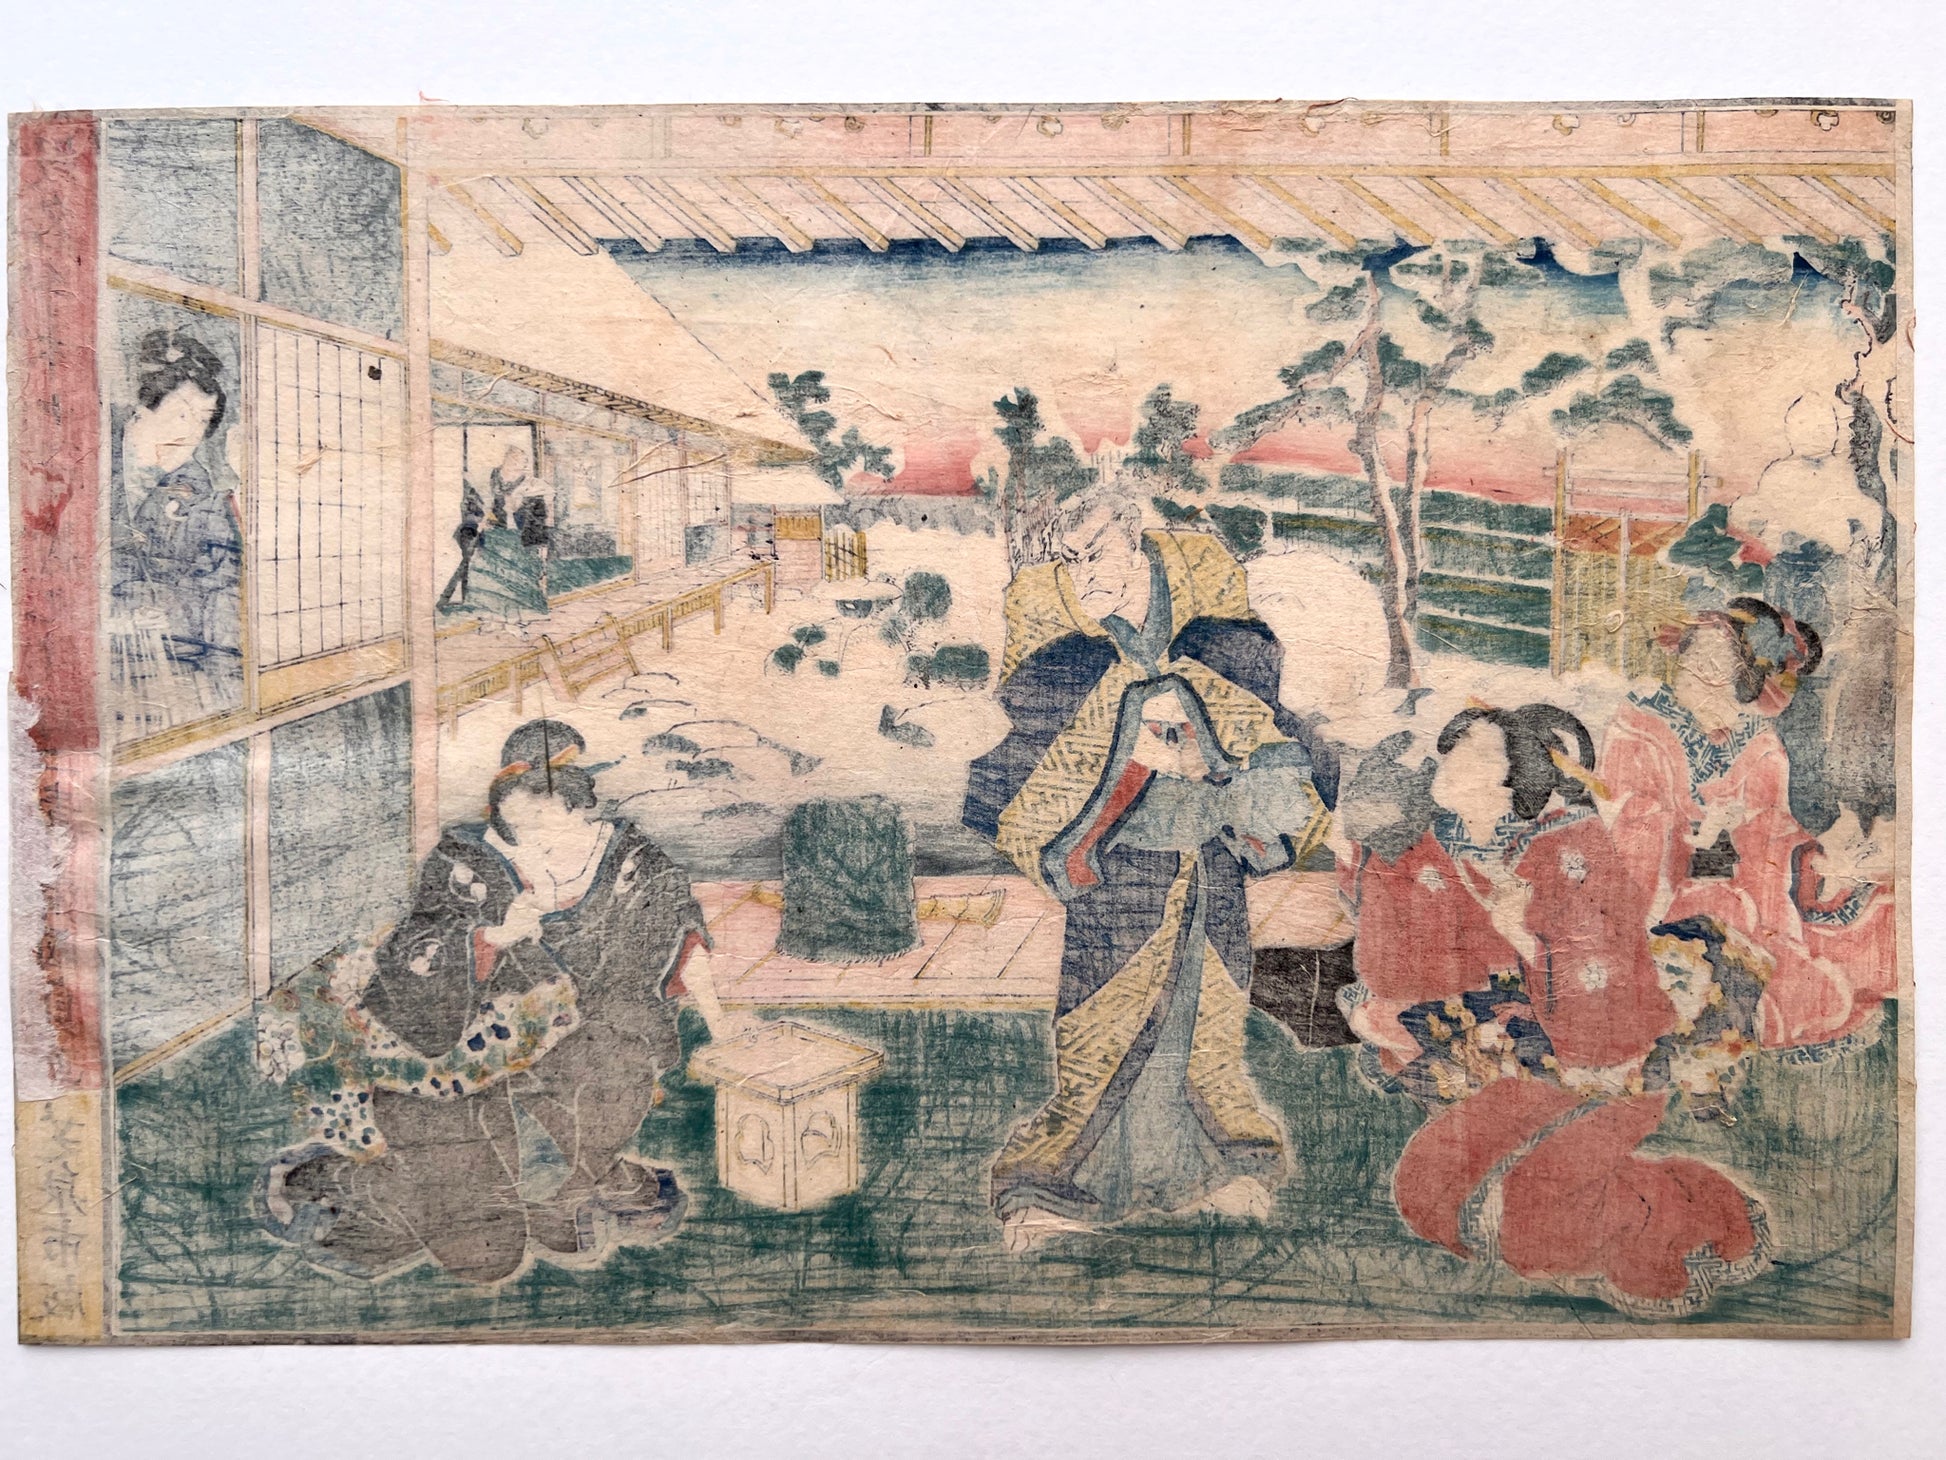 estampe japonaise samouraï et courtisanes paysage de neige, texte calligraphié, dos de l'estampe